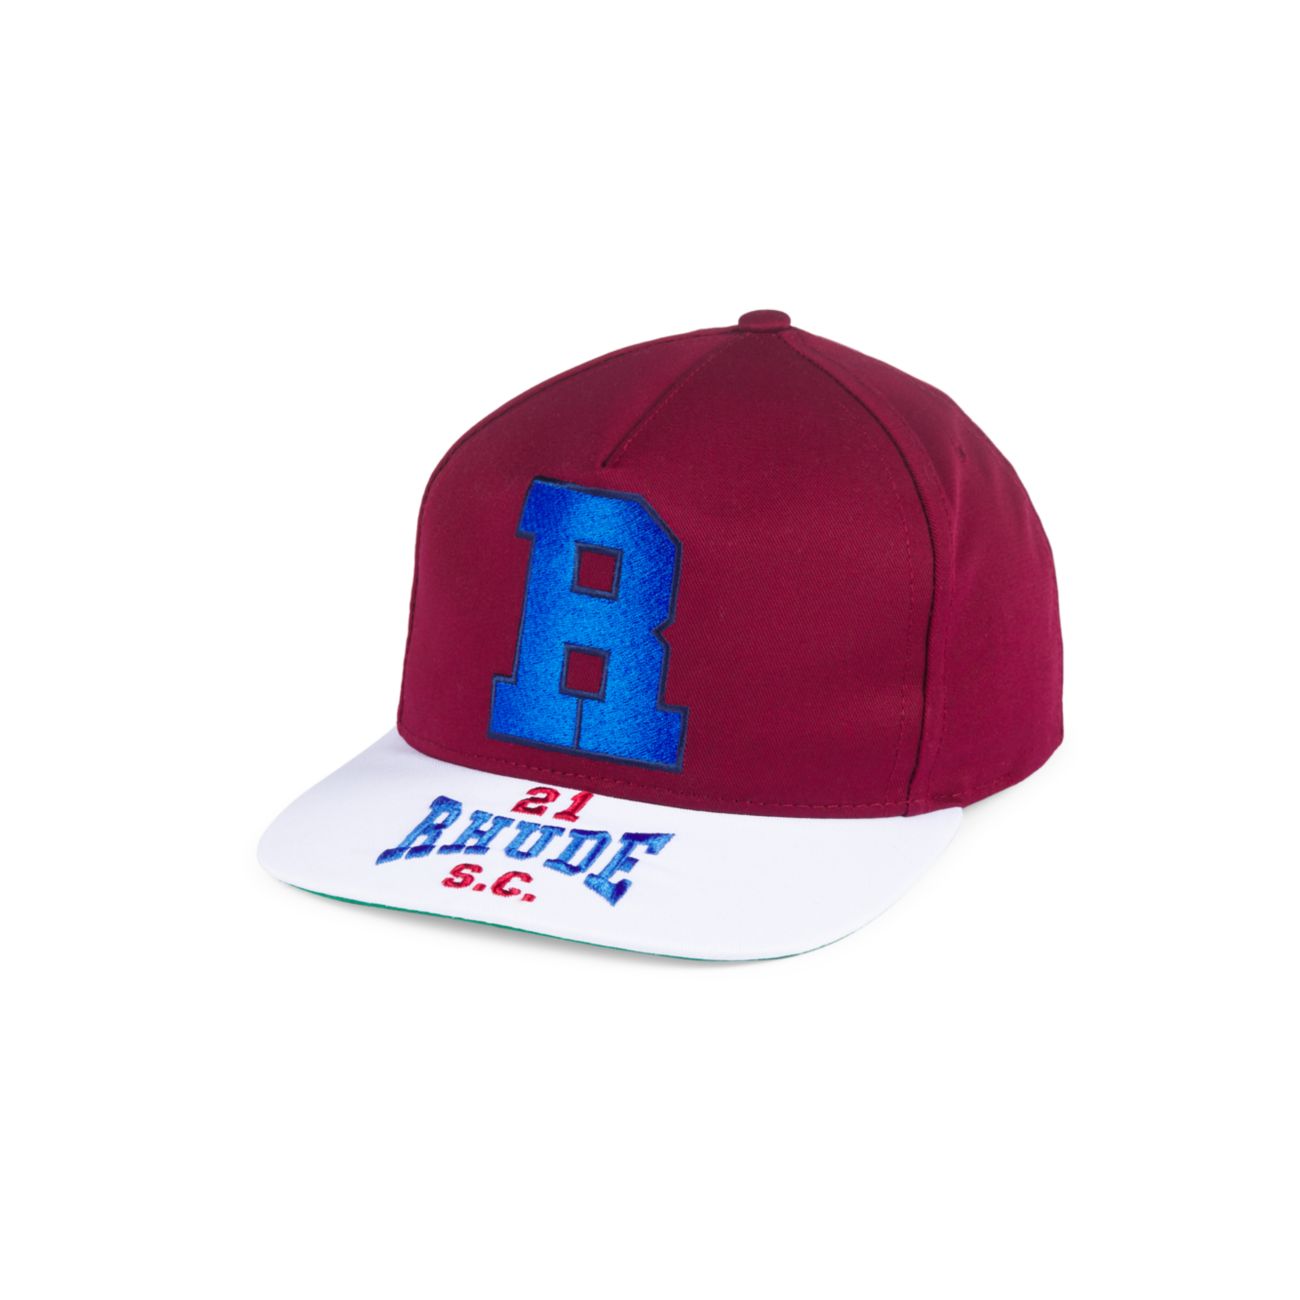 Шляпа Snapback с логотипом R H U D E